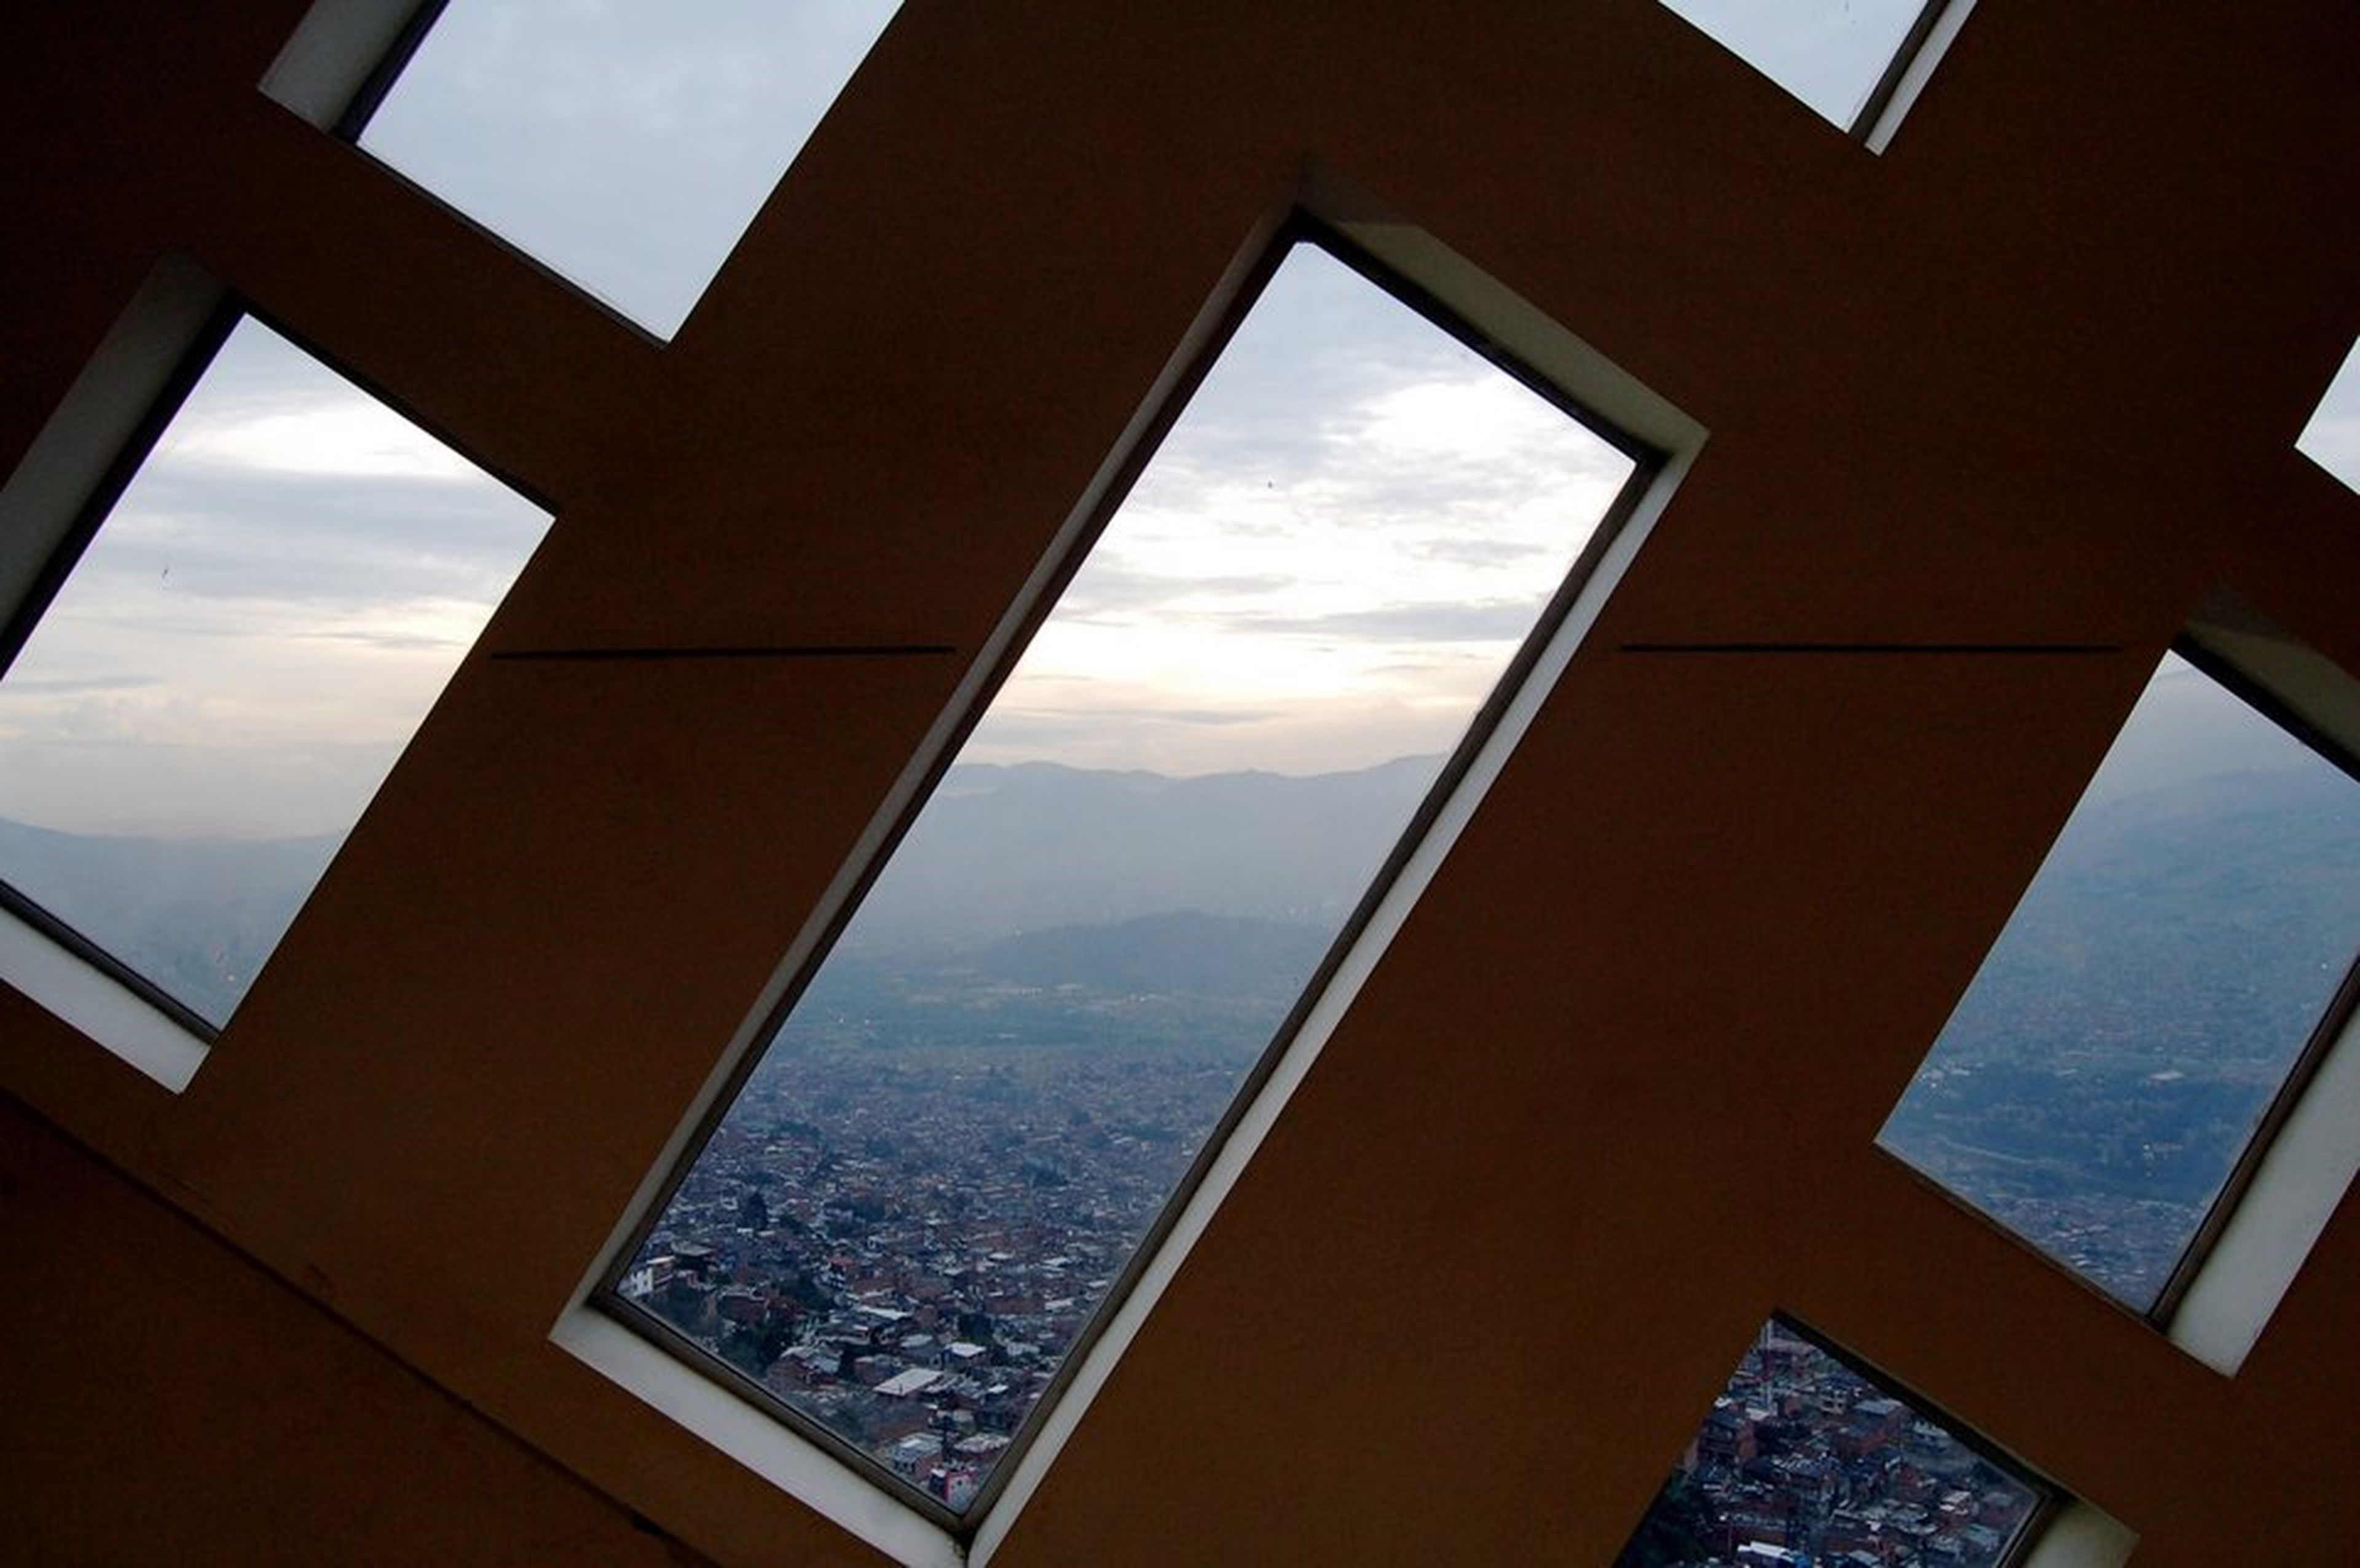 Desde el interior de la biblioteca, en el barrio de Santo Domingo Savio, la vista de toda la ciudad de Medellín es impactante.